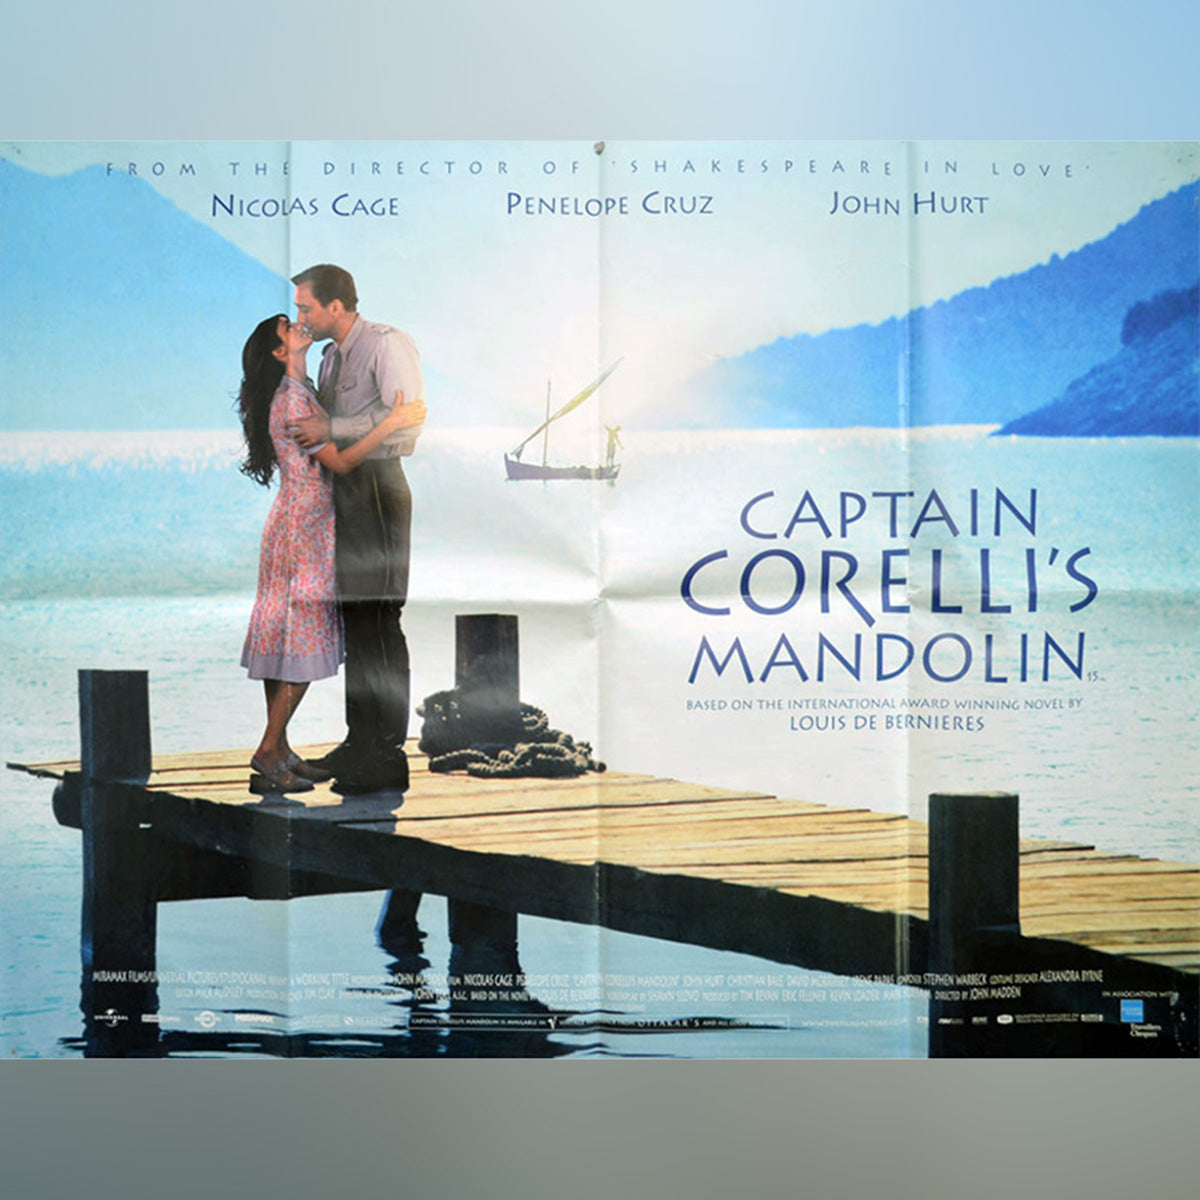 Original Movie Poster of Captain Corelli's Mandolin (2001)